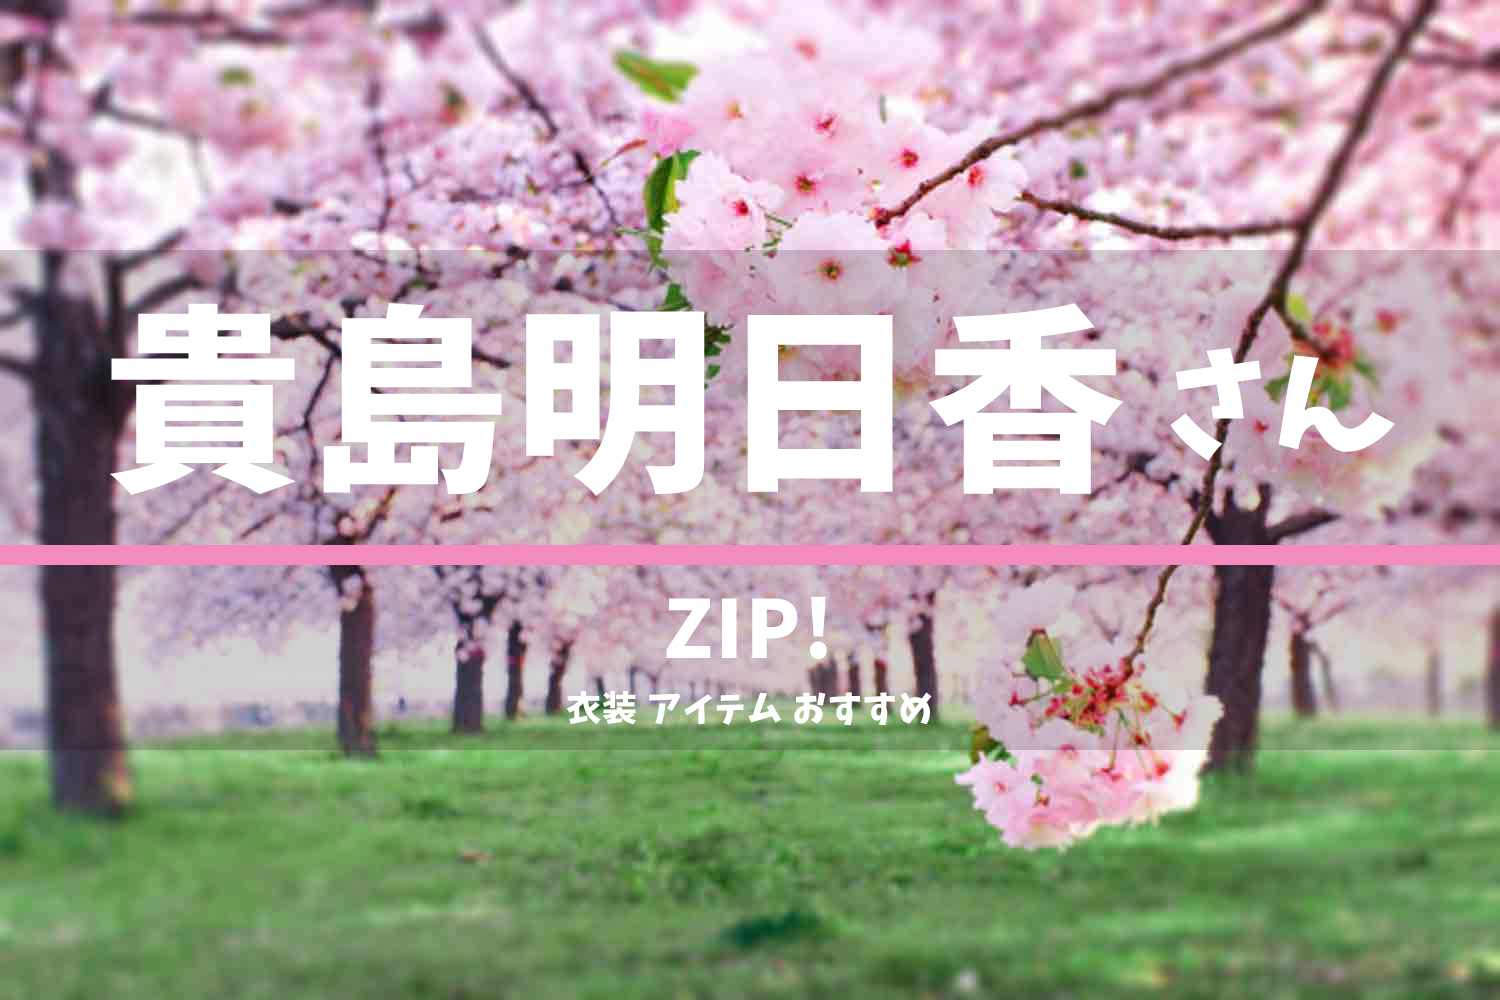 ZIP! 貴島明日香さん 番組 衣装 2022年3月28日放送